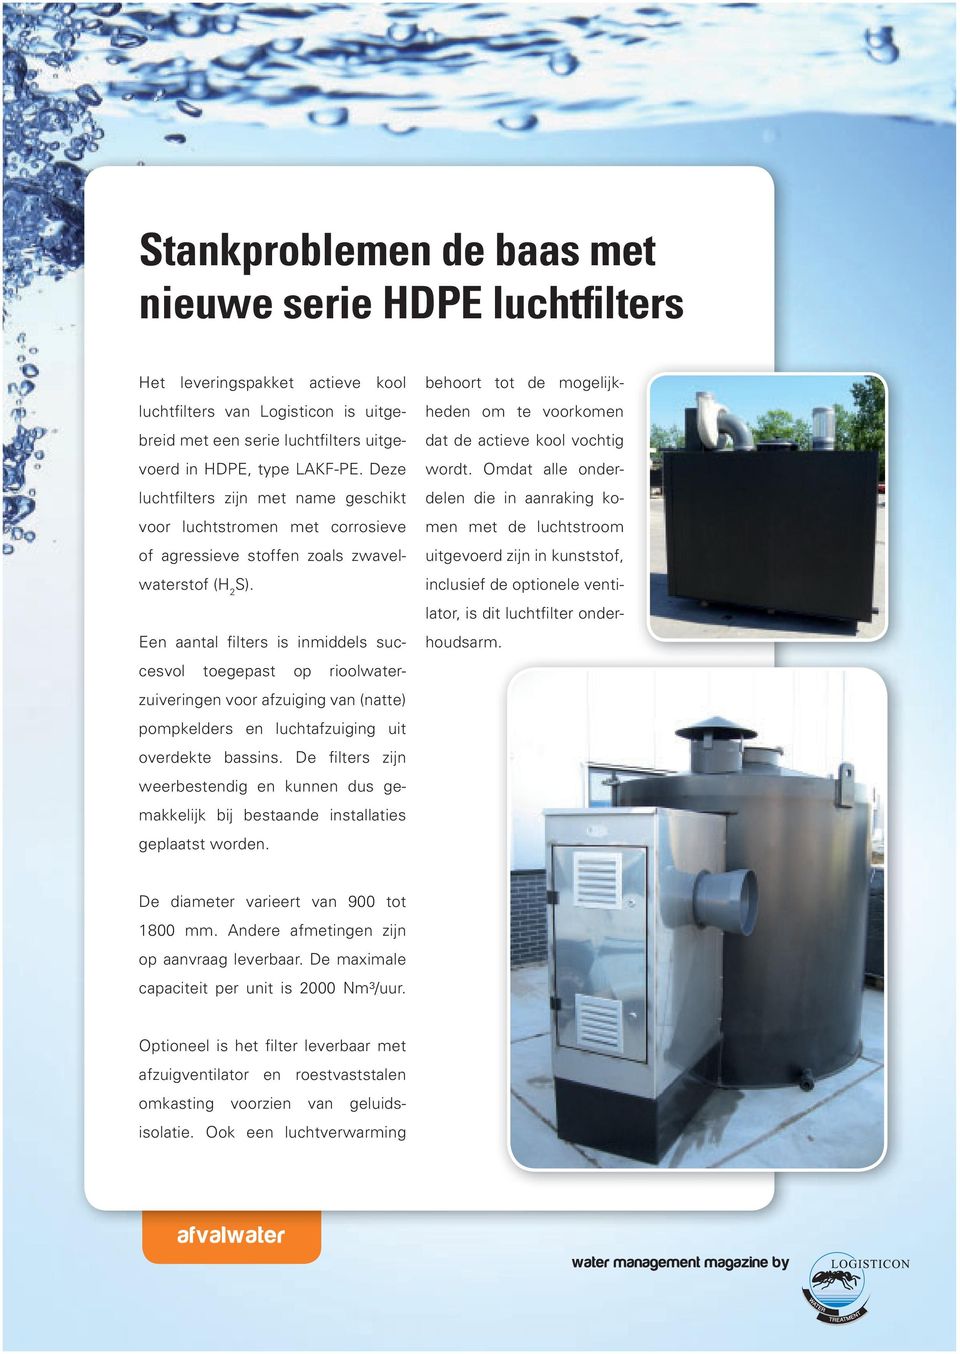 Een aantal filters is inmiddels succesvol toegepast op rioolwaterzuiveringen voor afzuiging van (natte) pompkelders en luchtafzuiging uit overdekte bassins.